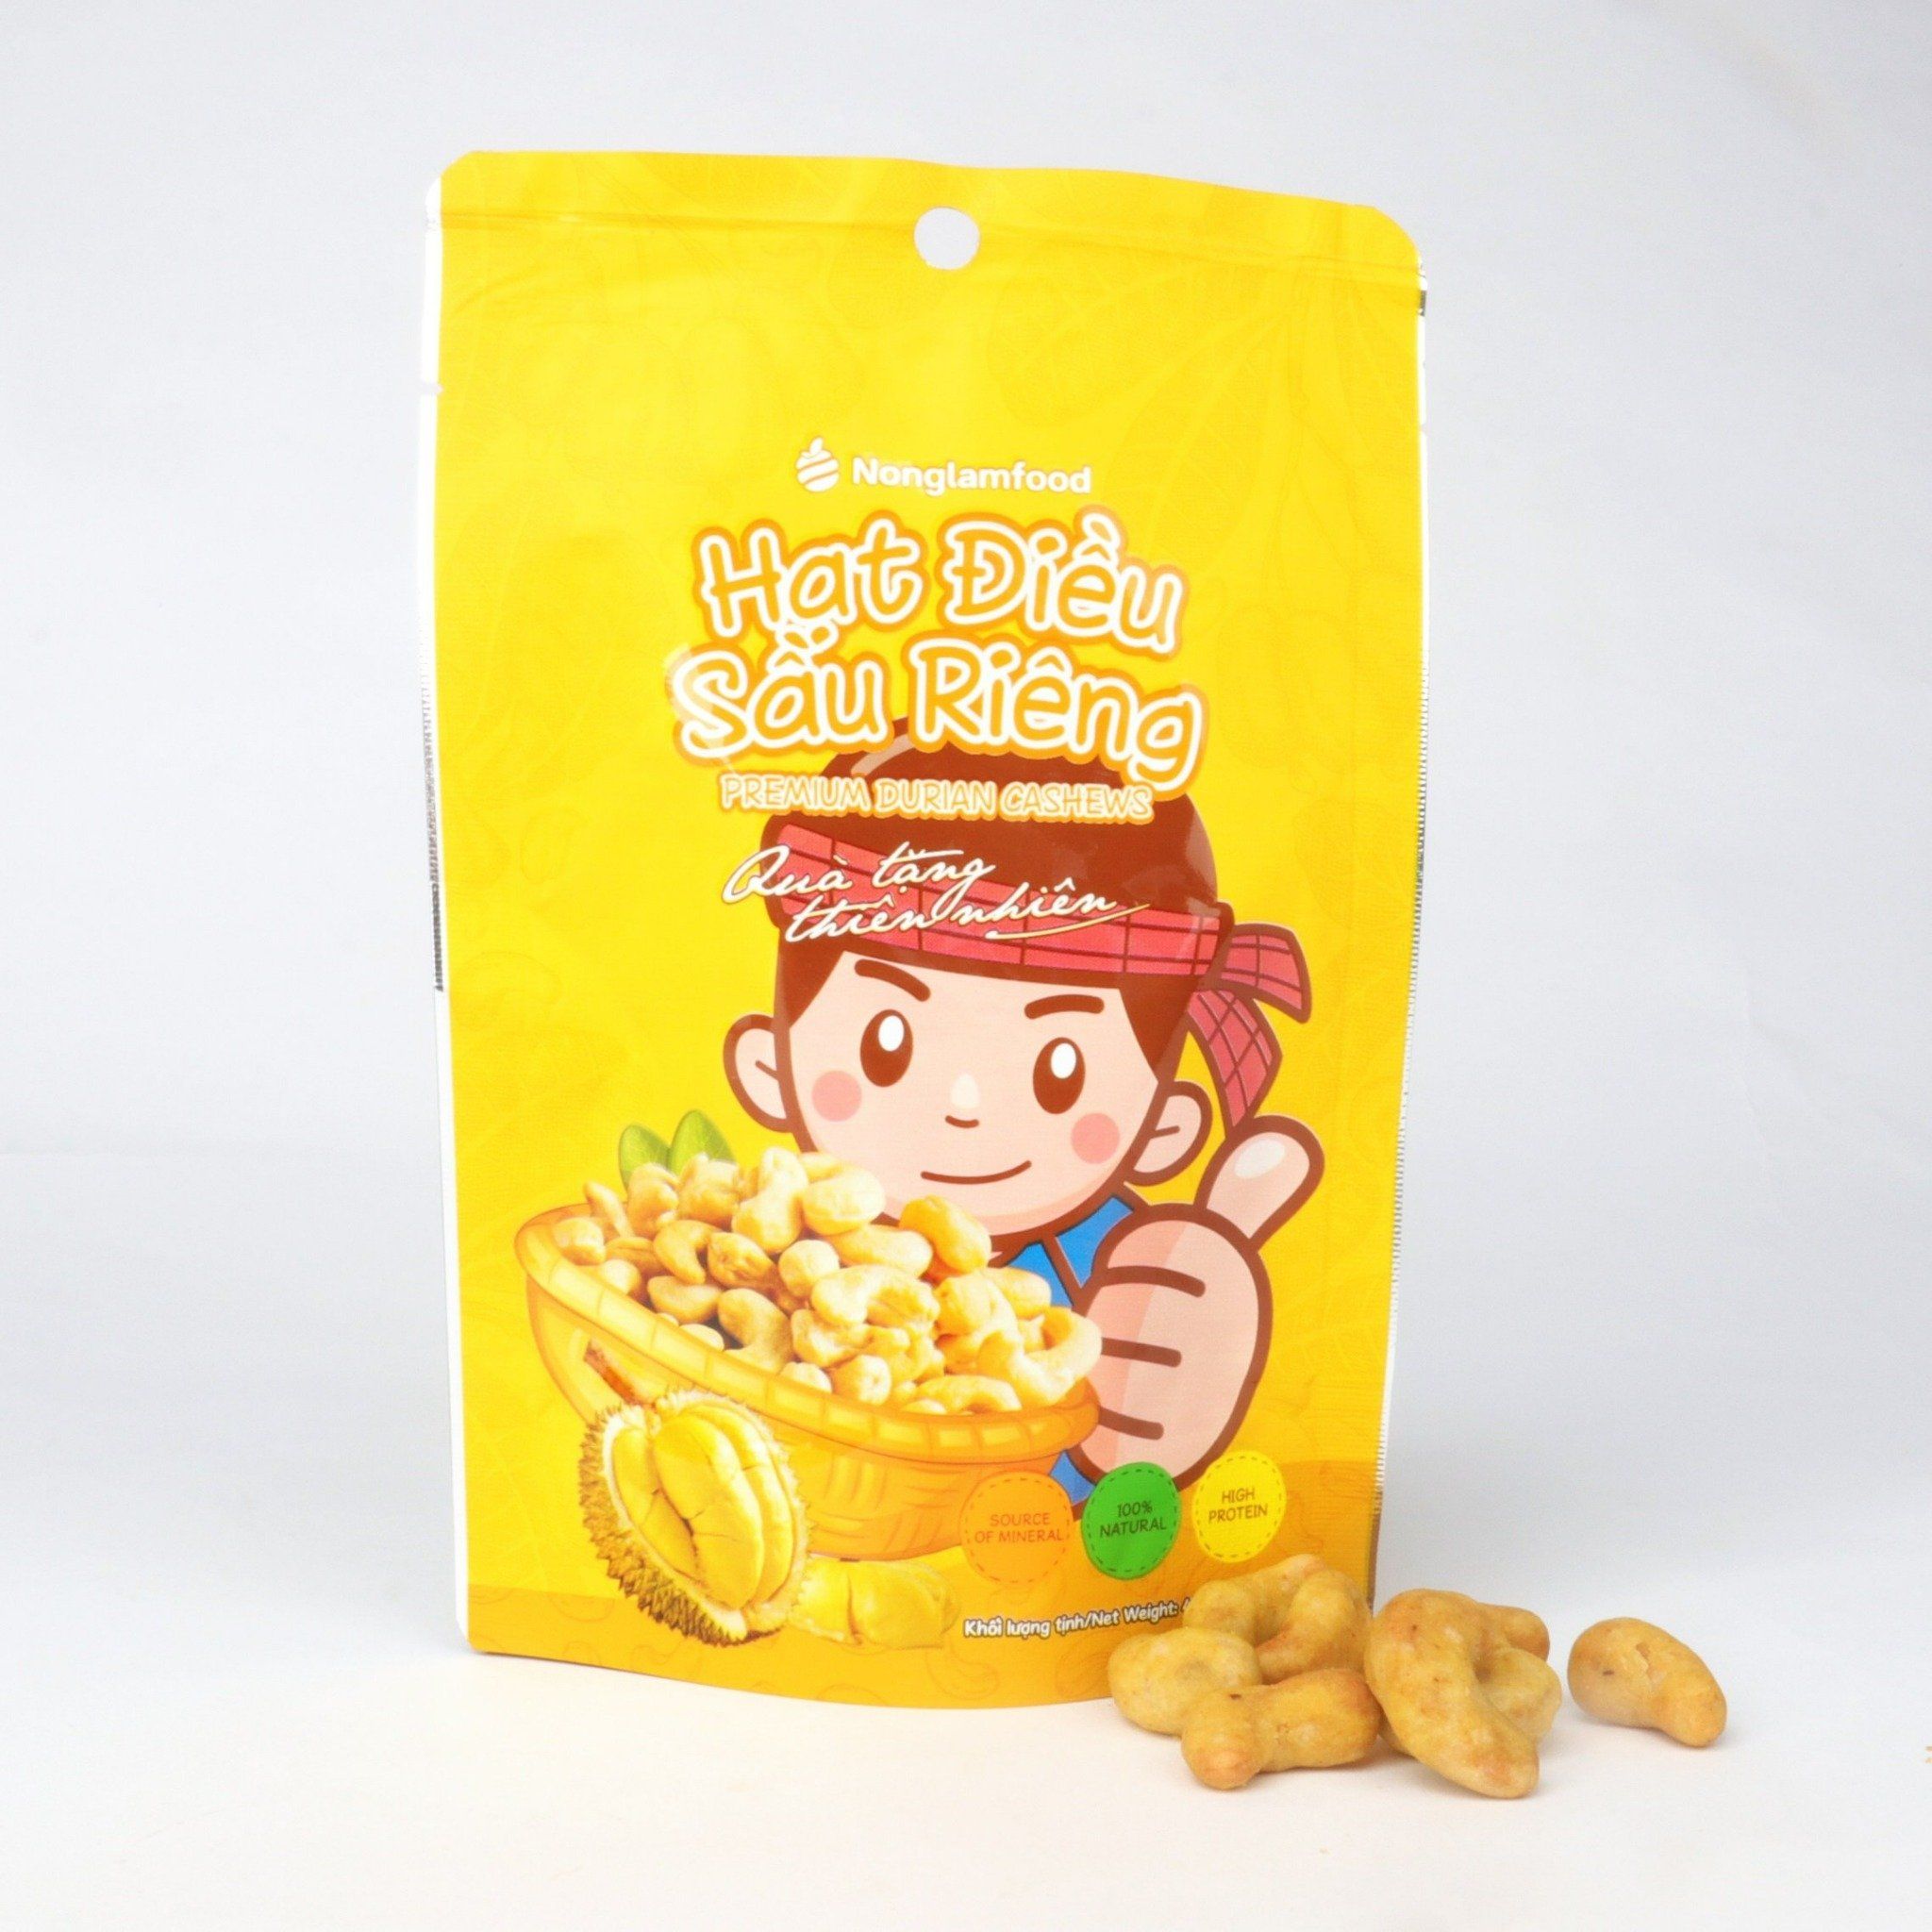 Hạt điều sầu riêng Nonglamfood túi 45g | Premium durian cashews